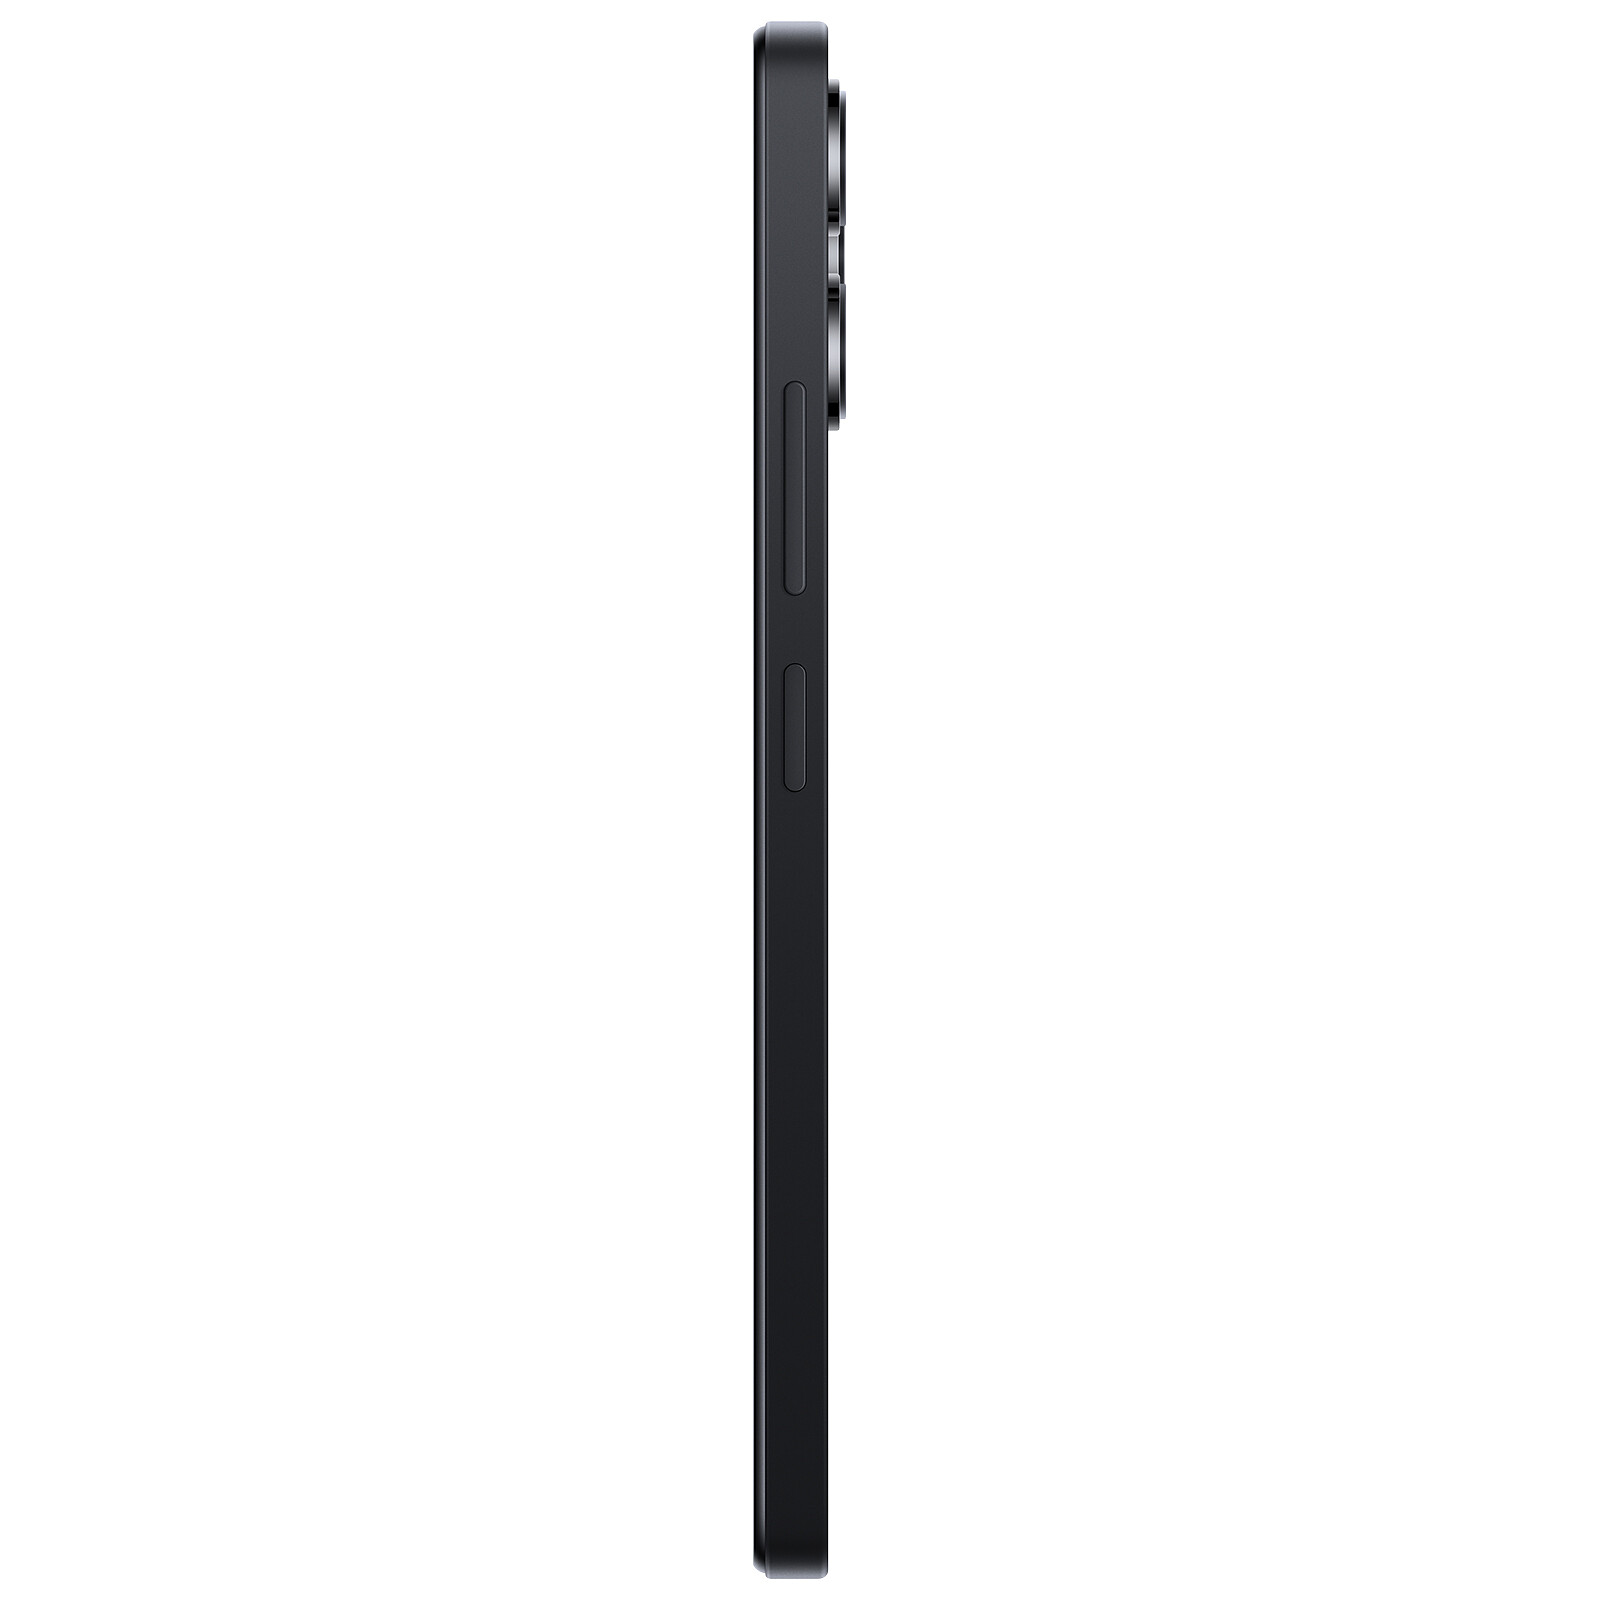 Xiaomi Redmi 12 5G Black (8GB / 256GB) - Mobile phone & smartphone